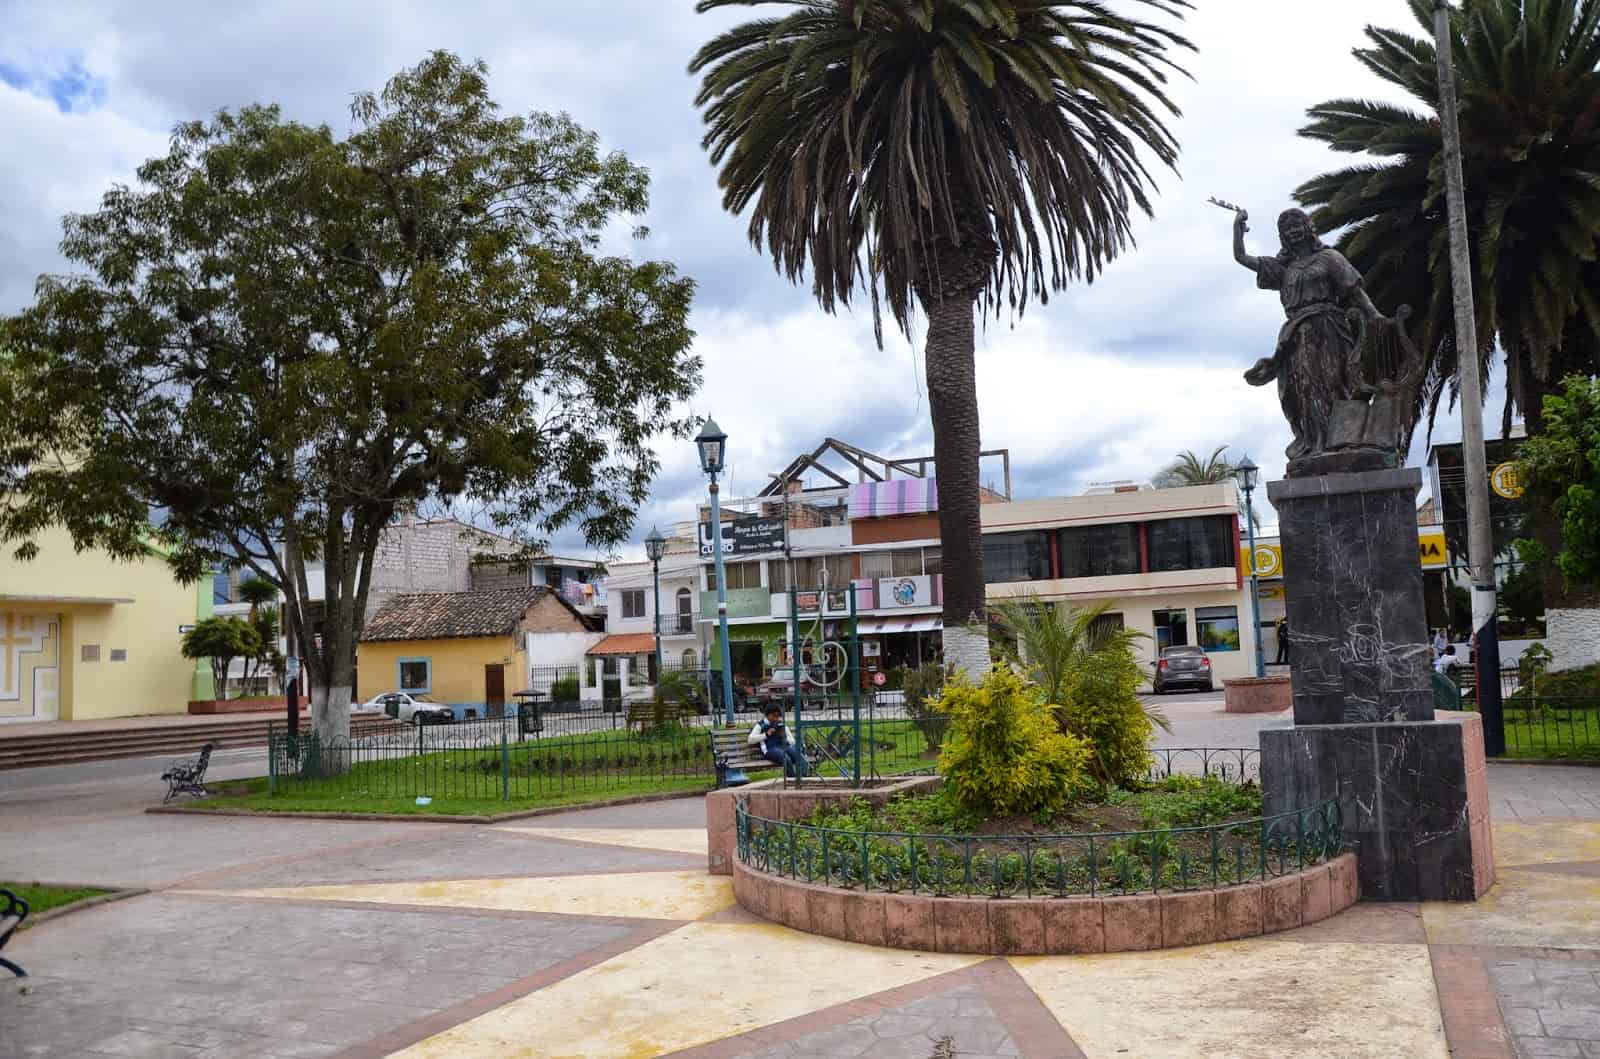 Plaza de San Francisco in Cotacachi, Ecuador